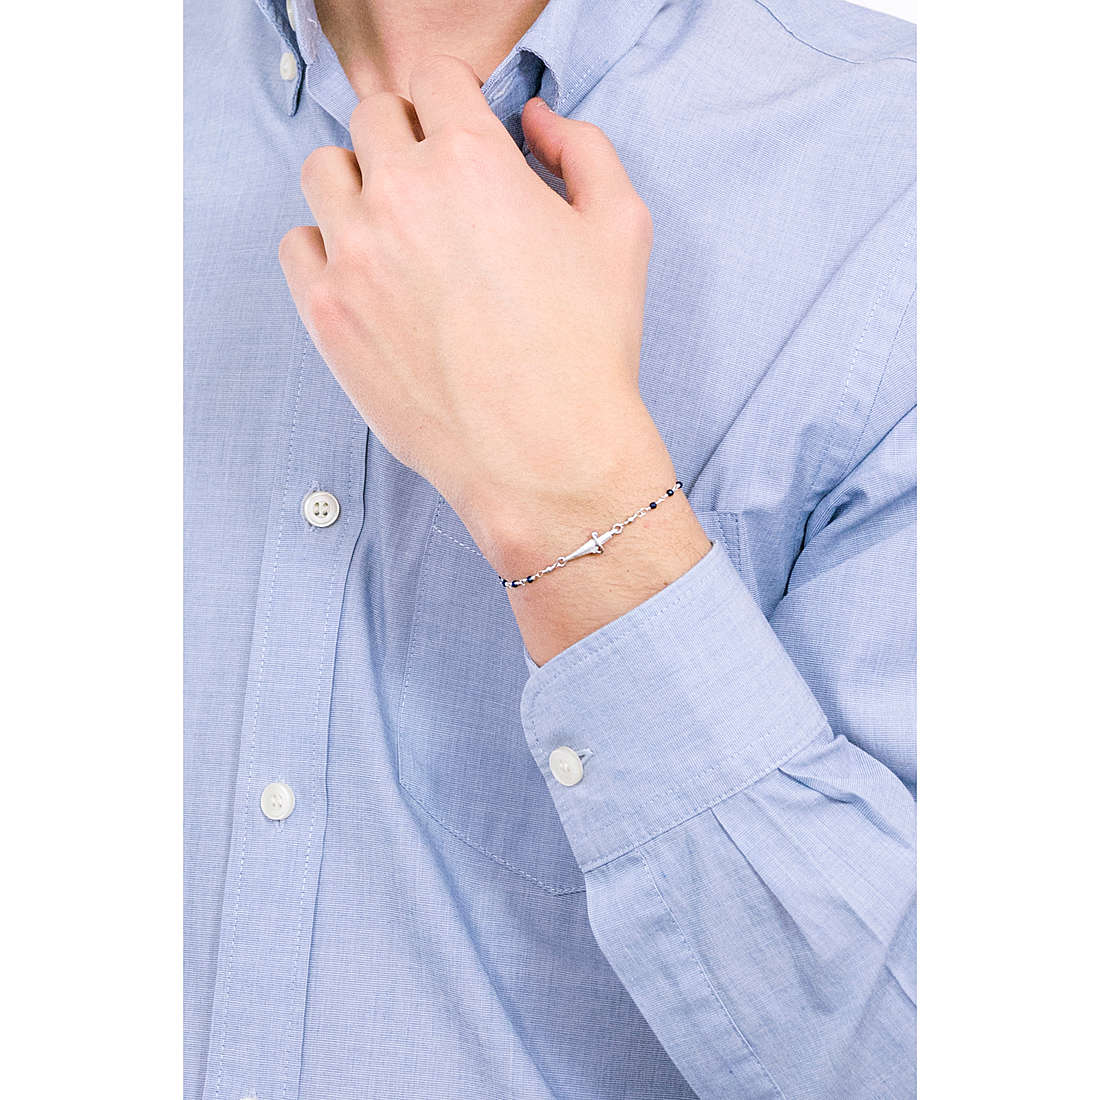 Cesare Paciotti bracelets Speckled man JPBR1987V wearing